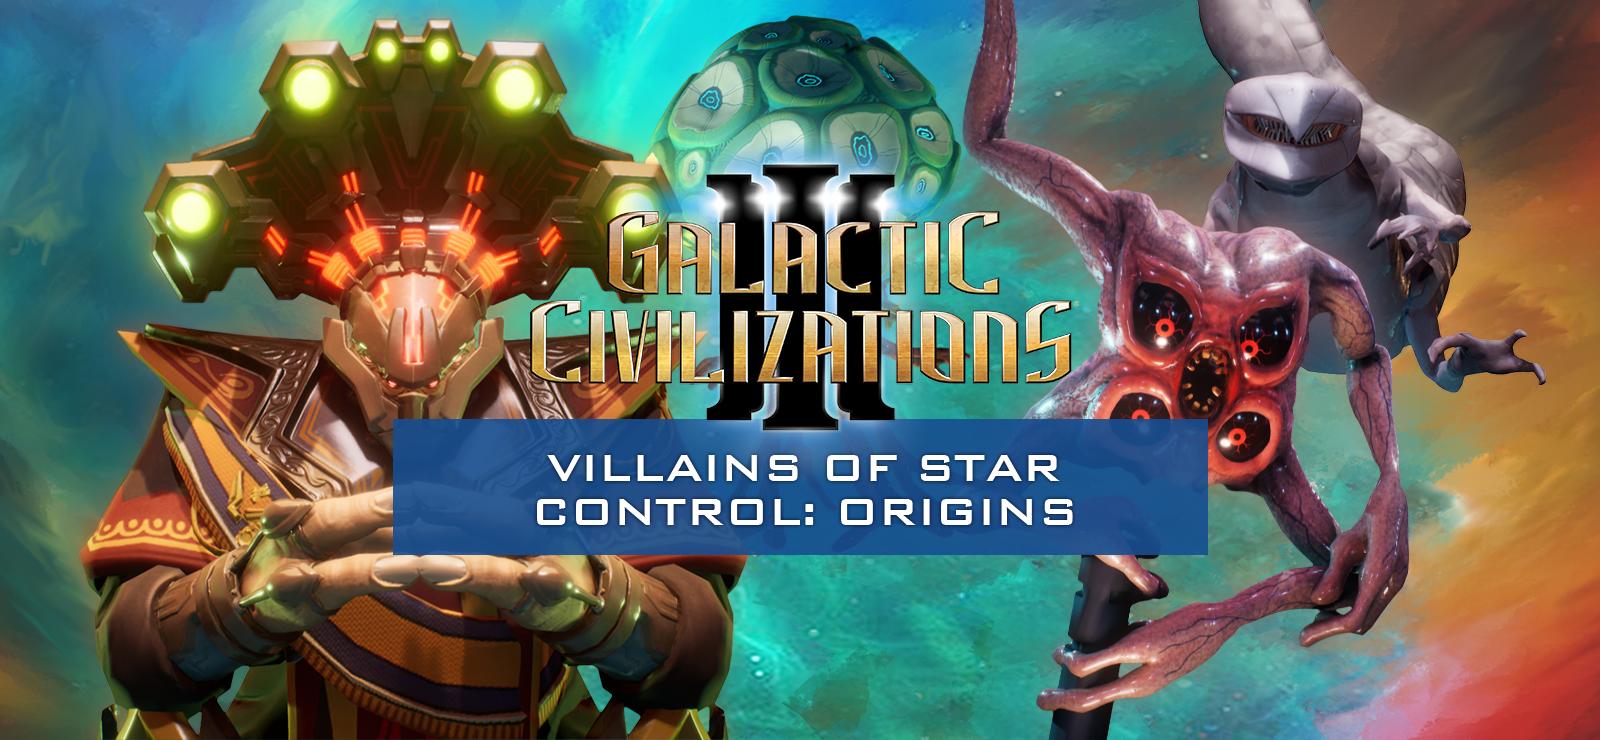 Galactic Civilizations III - Villains Of Star Control: Origins DLC